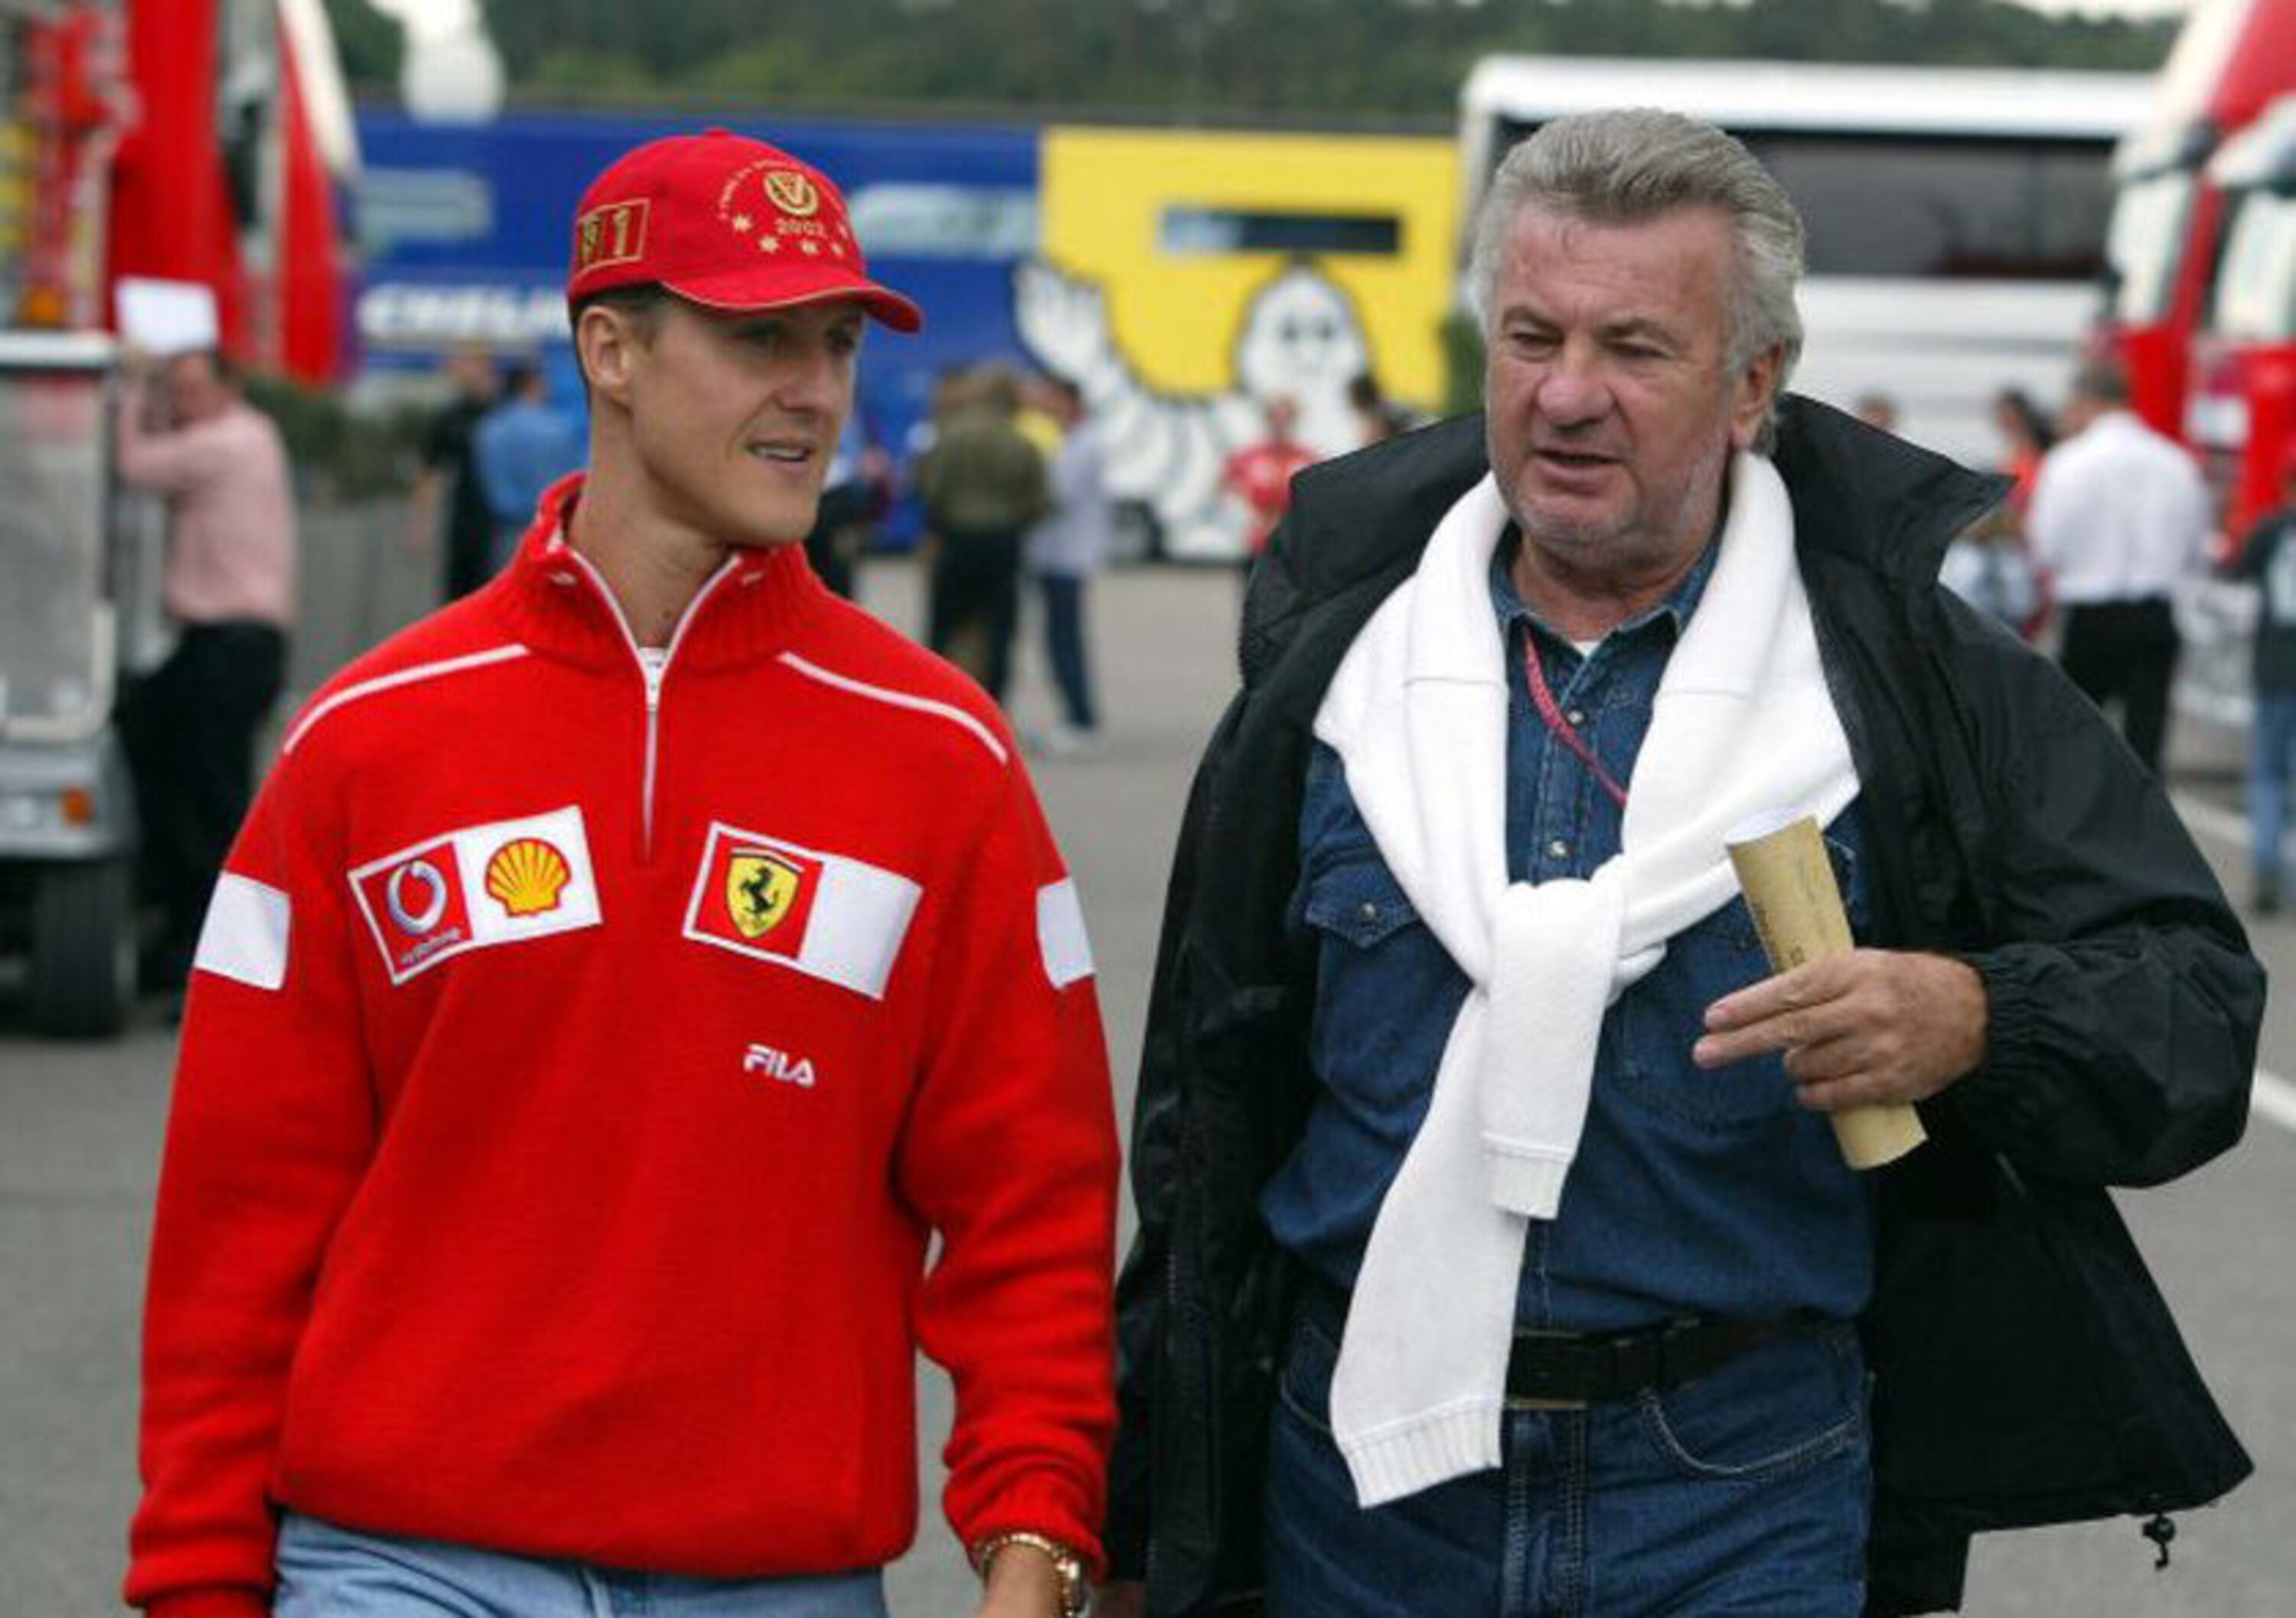 Vi racconto Schumacher, prima puntata: Willi Weber